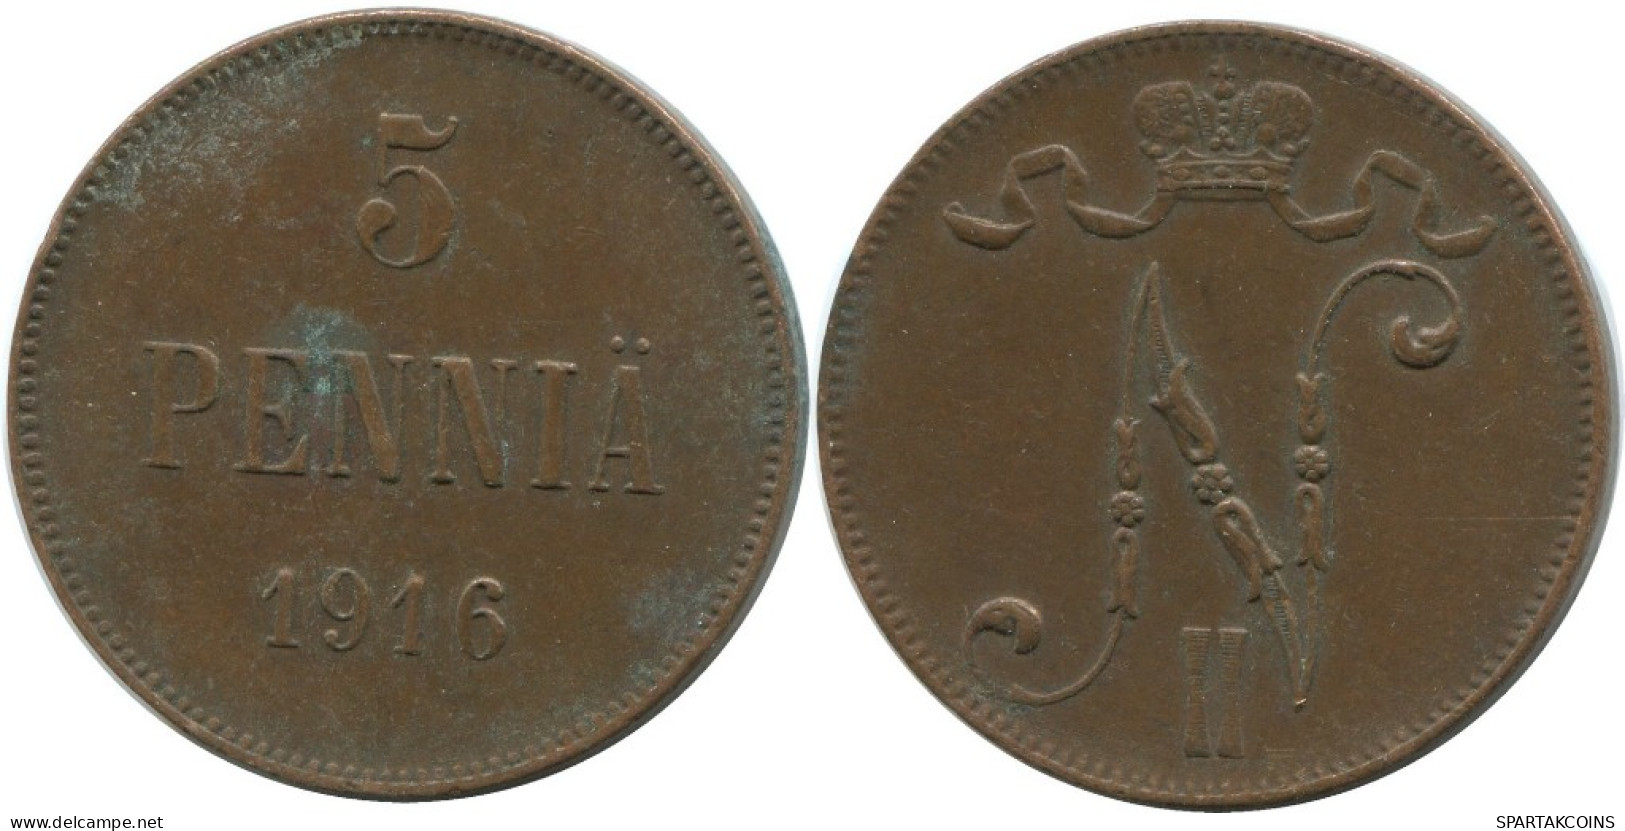 5 PENNIA 1916 FINLAND Coin RUSSIA EMPIRE #AB140.5.U.A - Finland